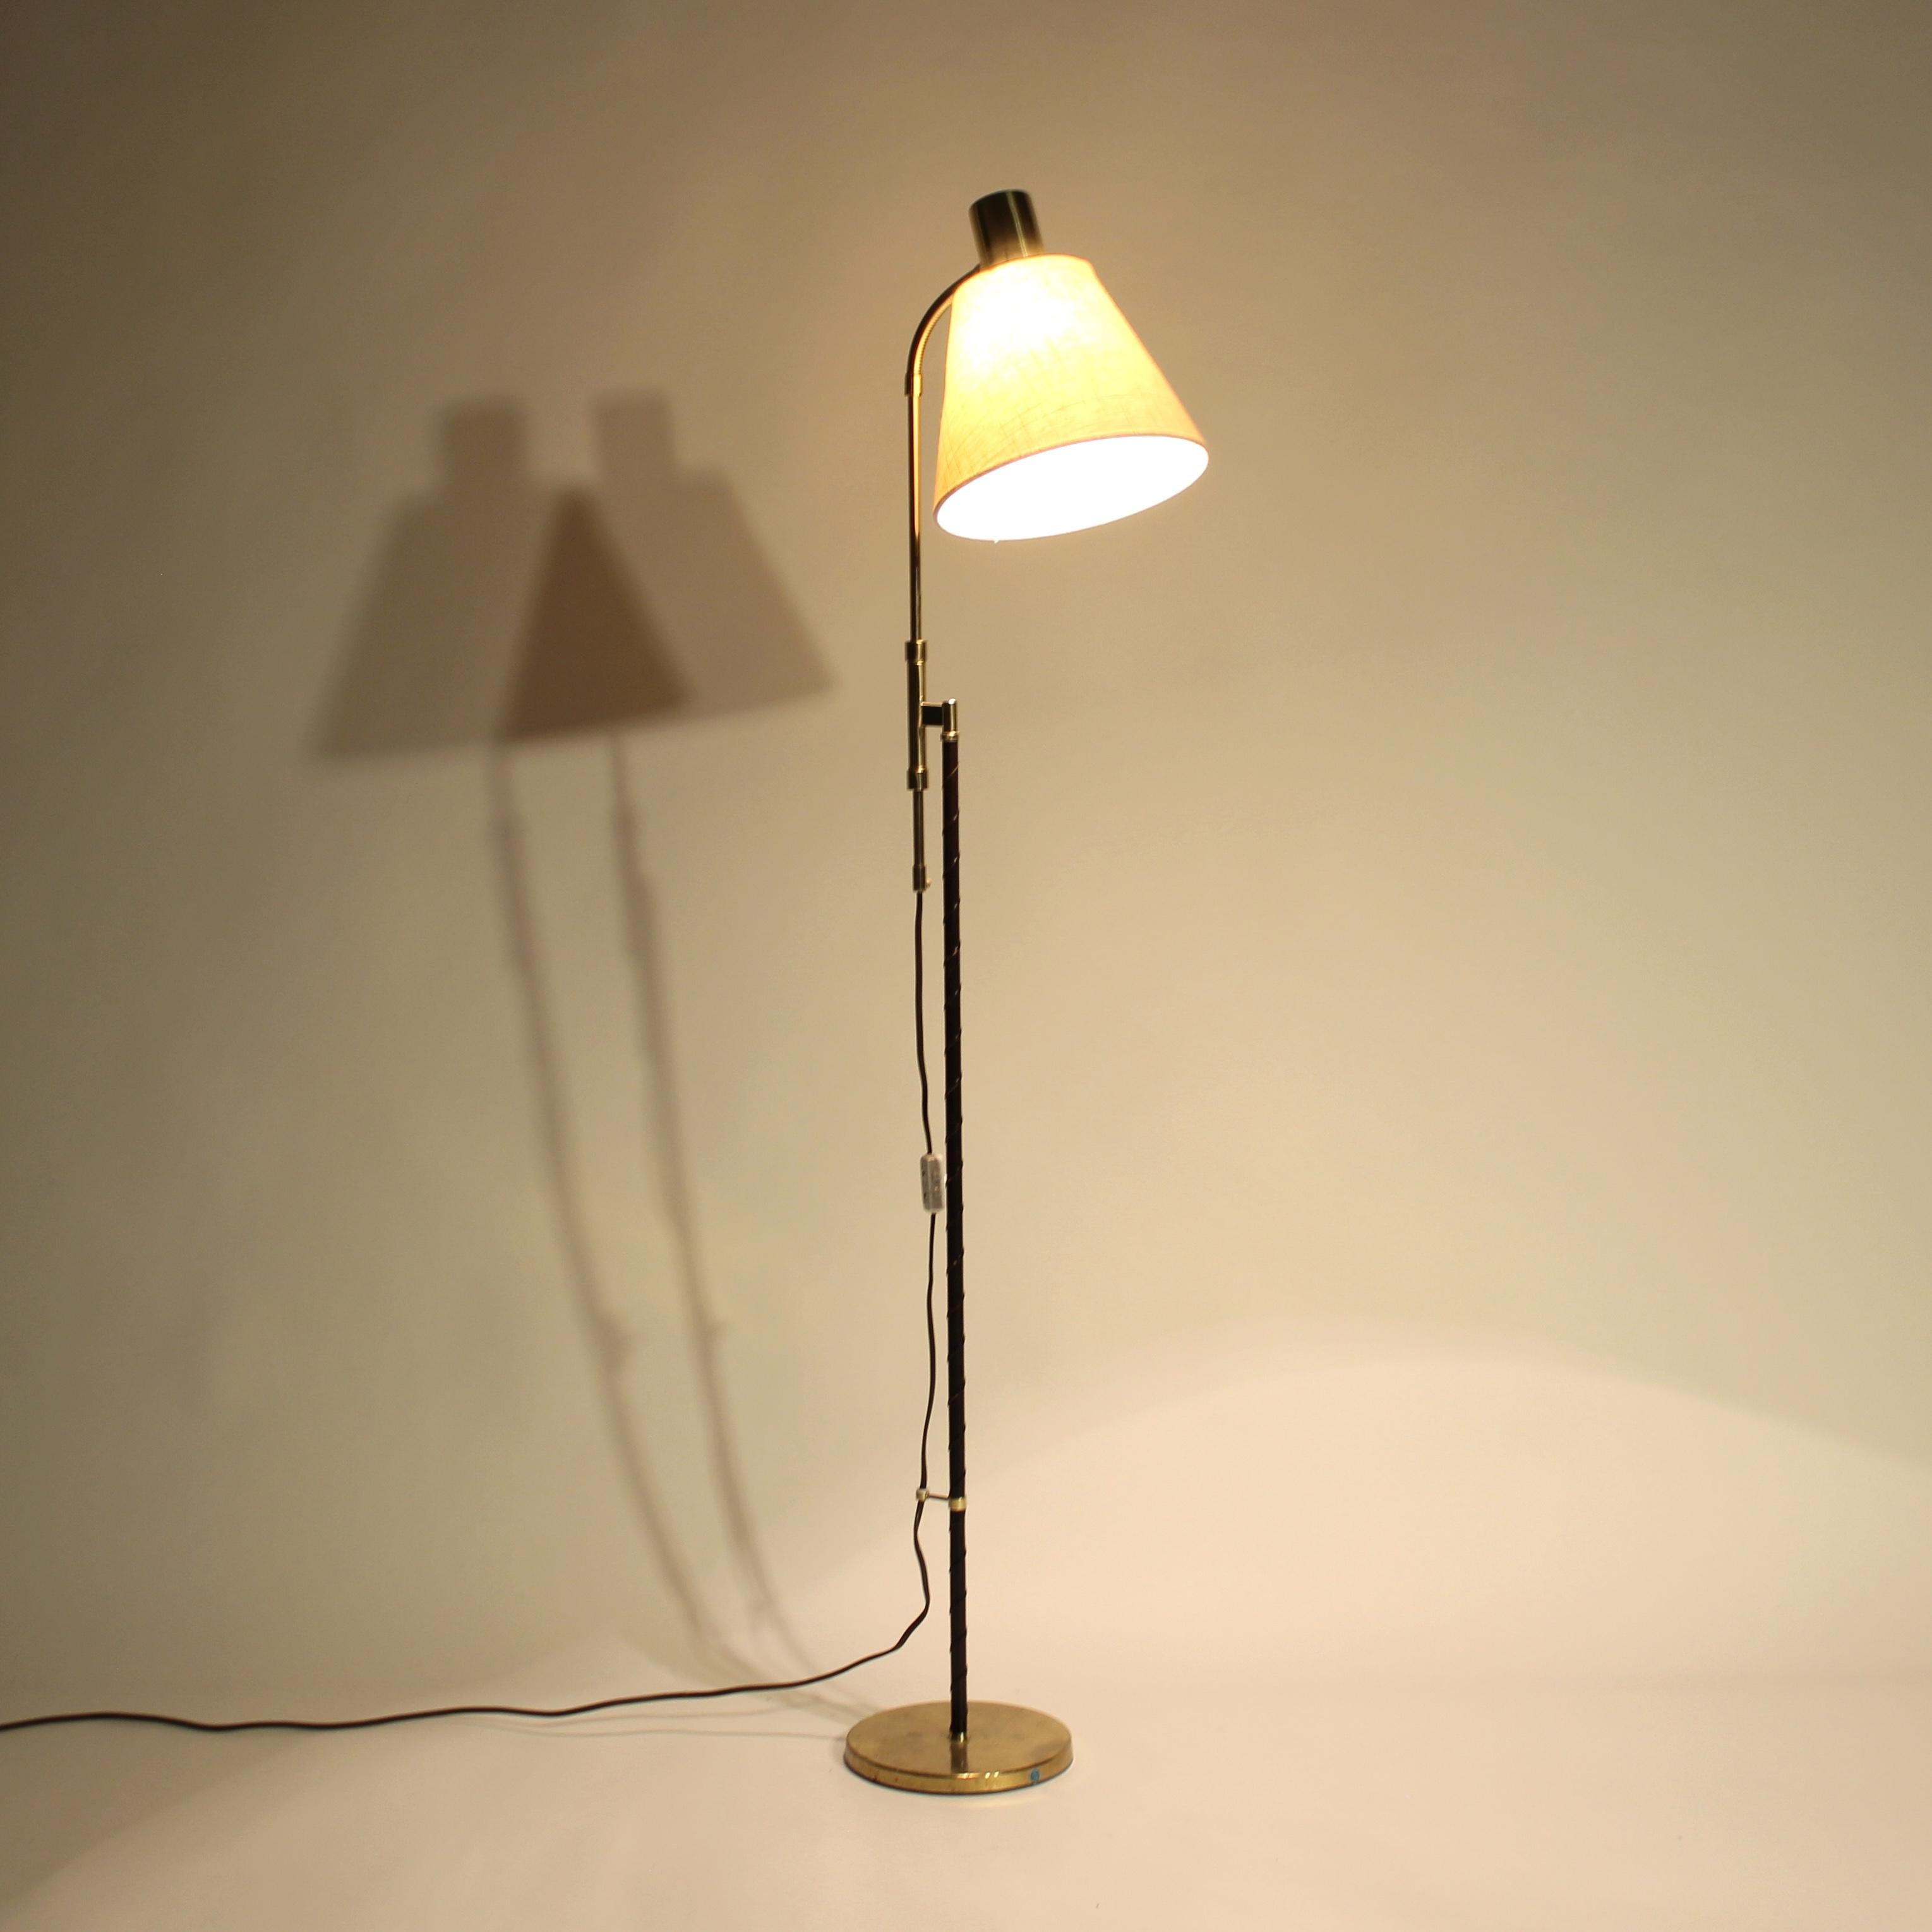 Swedish height adjustable floor lamp by MAE (Möller Armatur Eskilstuna), 1960s For Sale 4